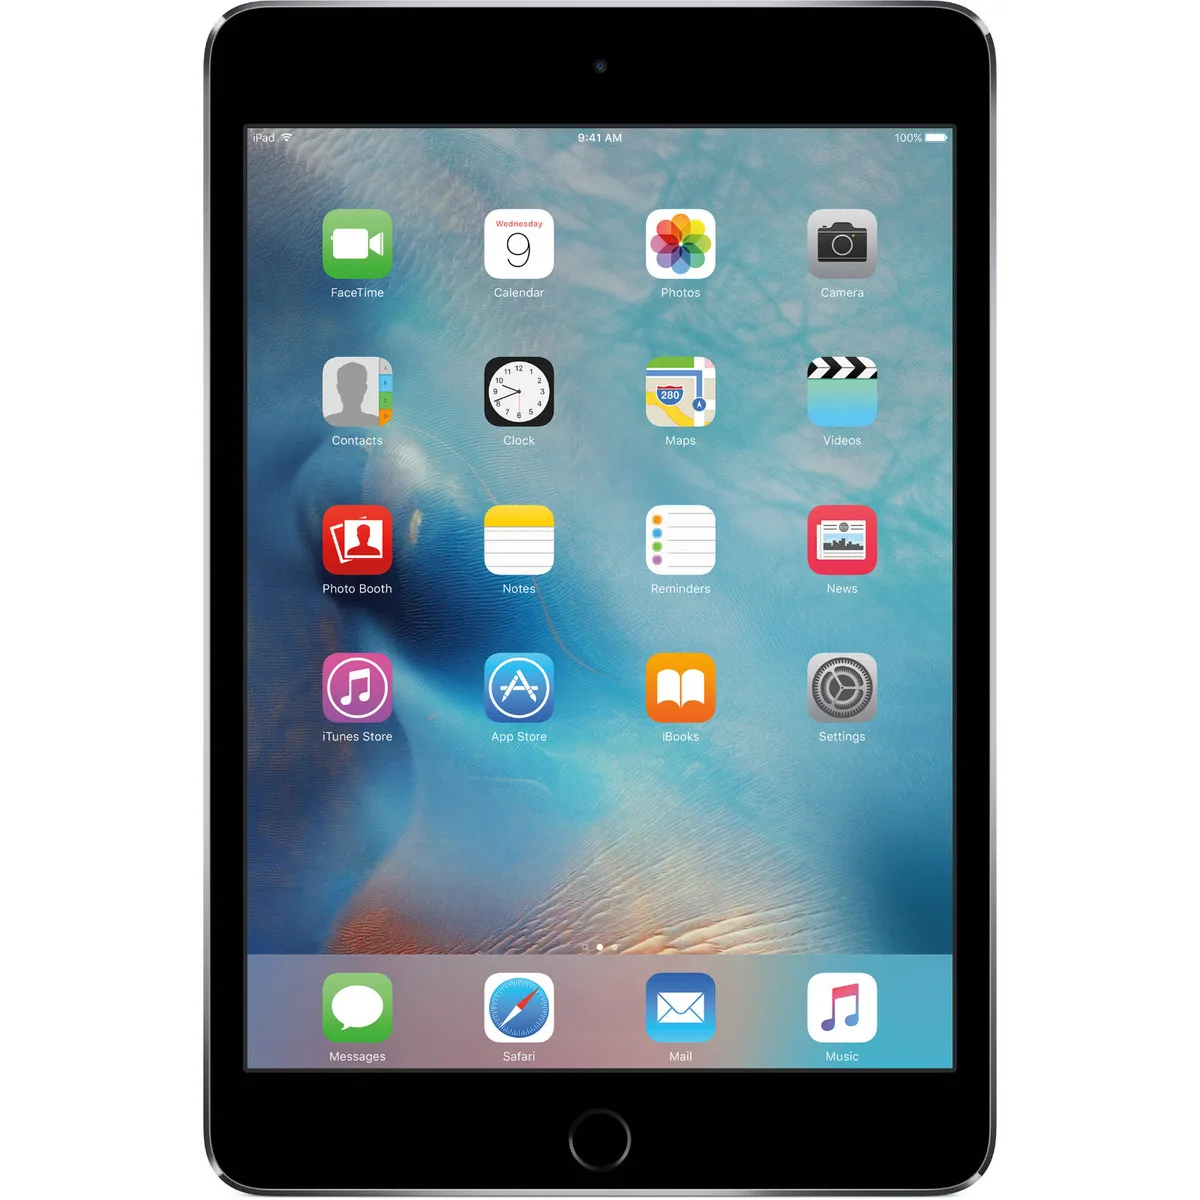 Apple iPad mini 3 16GB, Wi-Fi, 7.9in - Space Gray a1599 